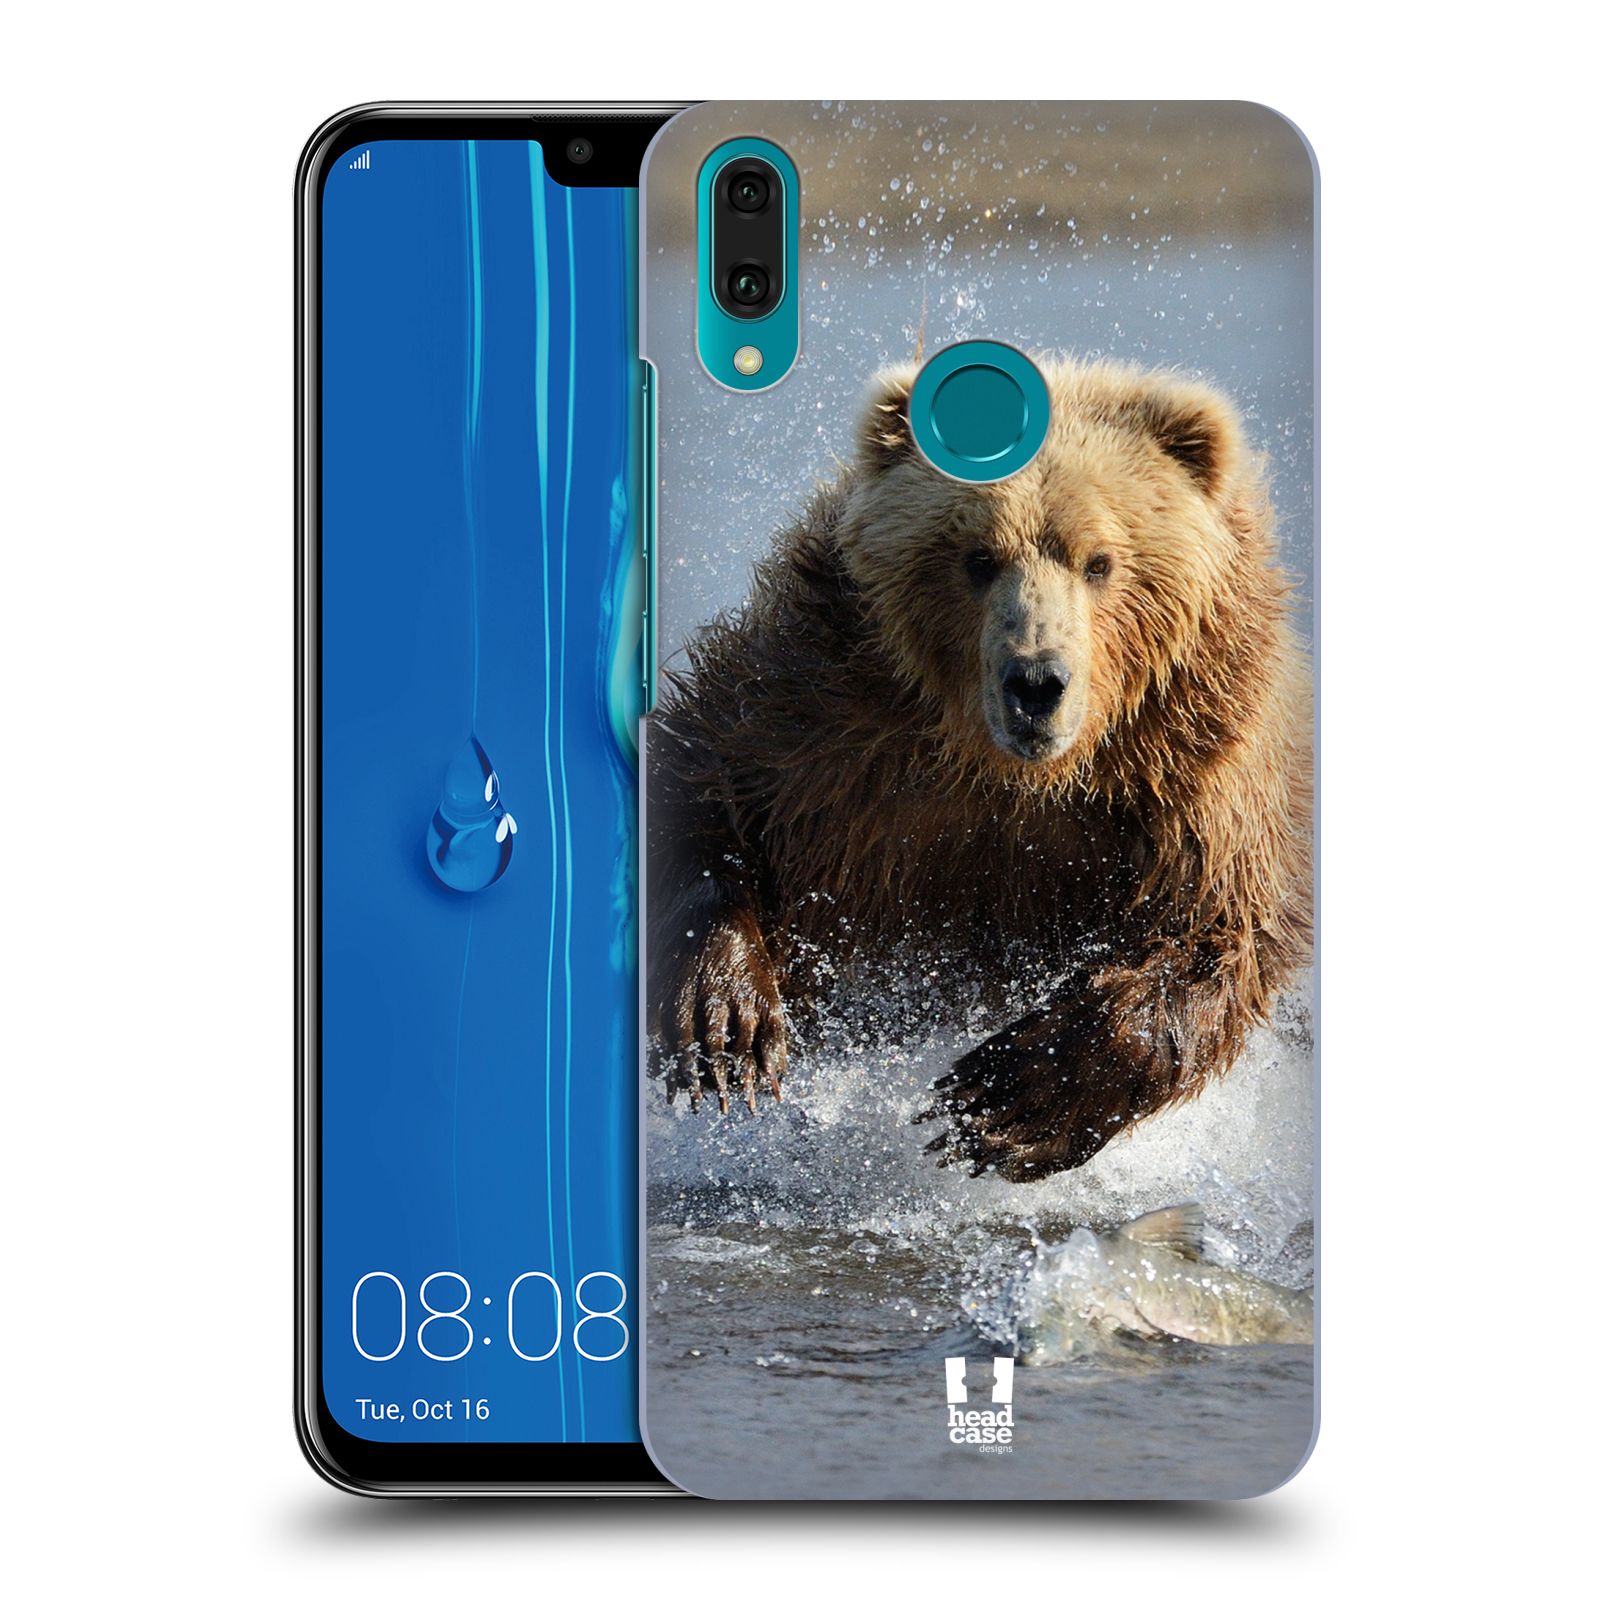 Pouzdro na mobil Huawei Y9 2019 - HEAD CASE - vzor Divočina, Divoký život a zvířata foto MEDVĚD GRIZZLY HŇEDÁ